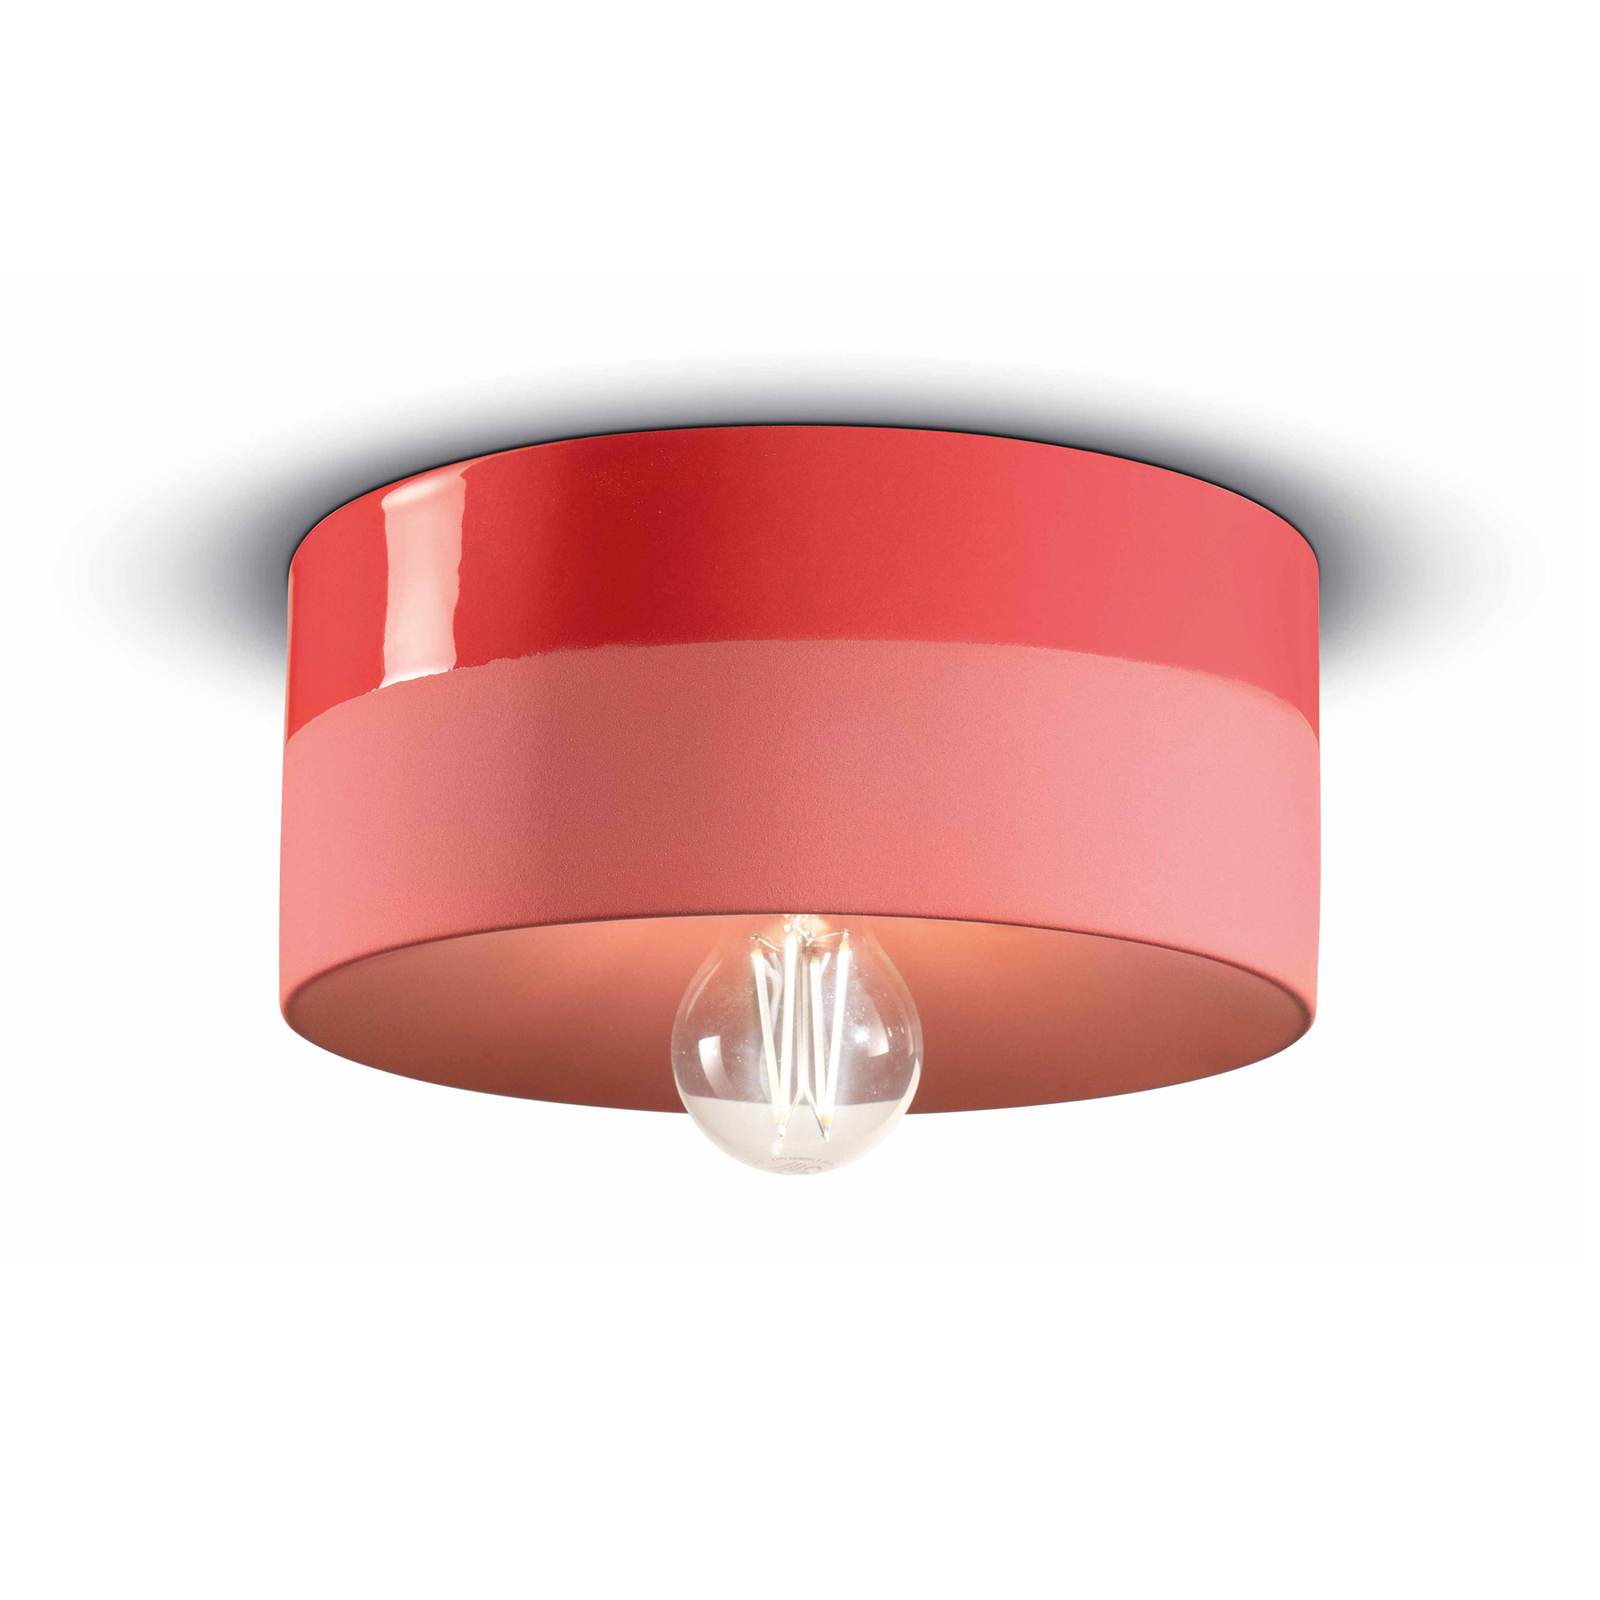 Lampa sufitowa Pi ceramiczna błyszcząca/matowa Ø 25 cm czerwona